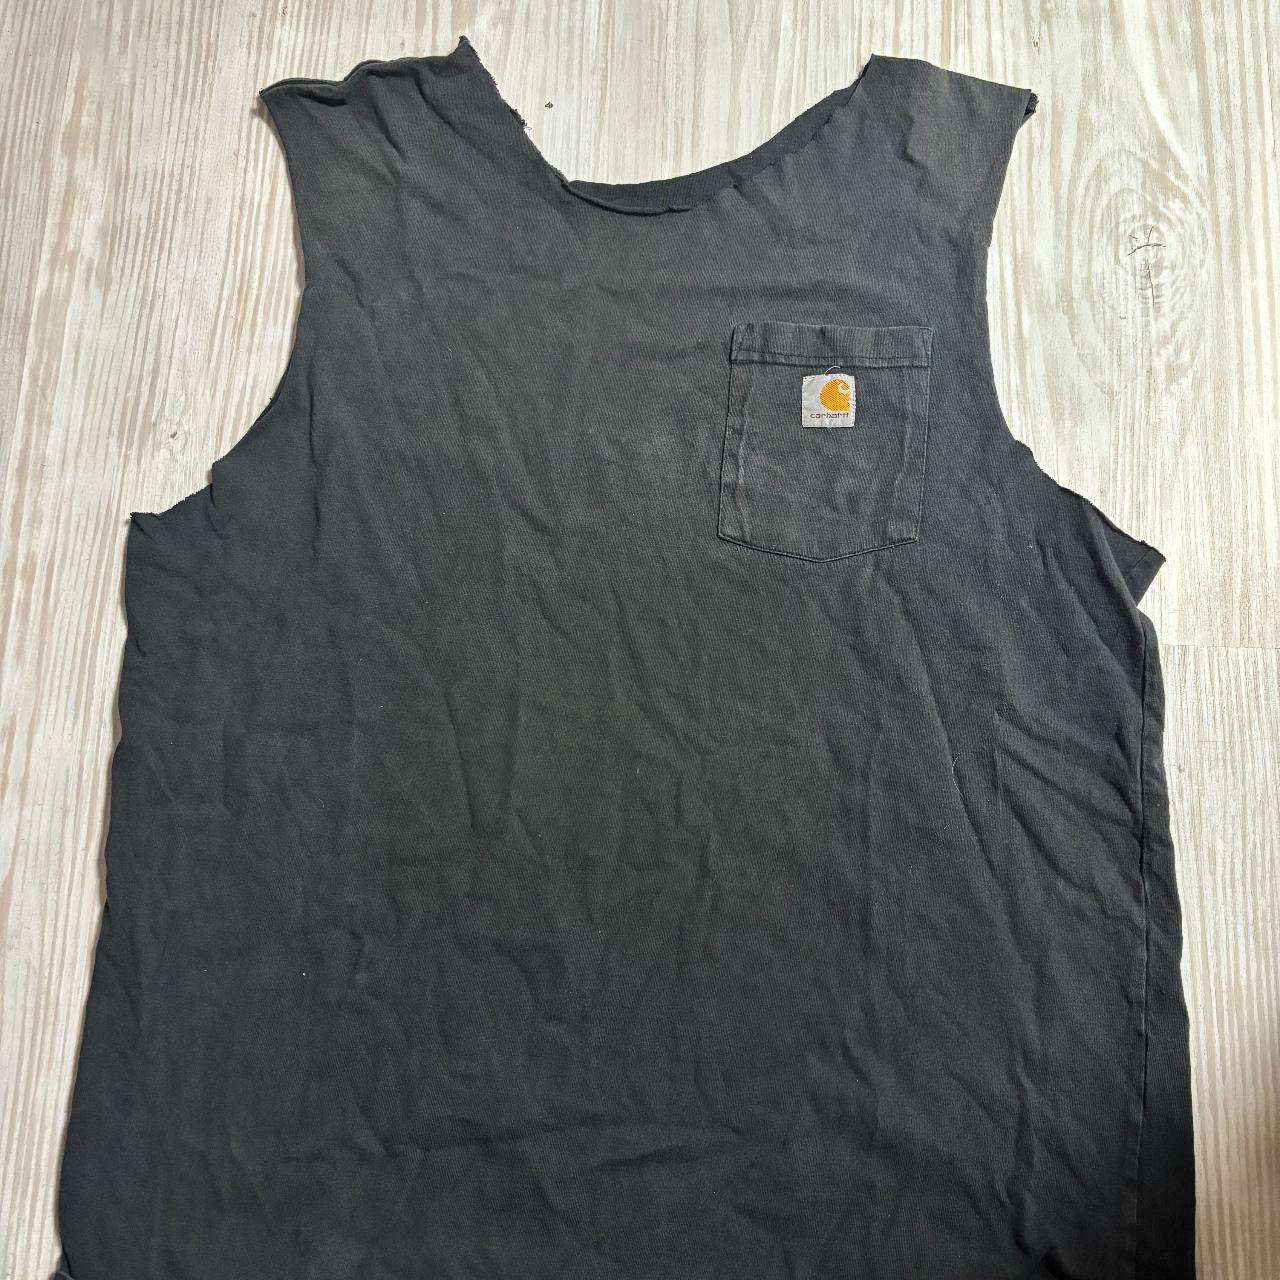 Thrifted black Carhart cut off shirt - Depop